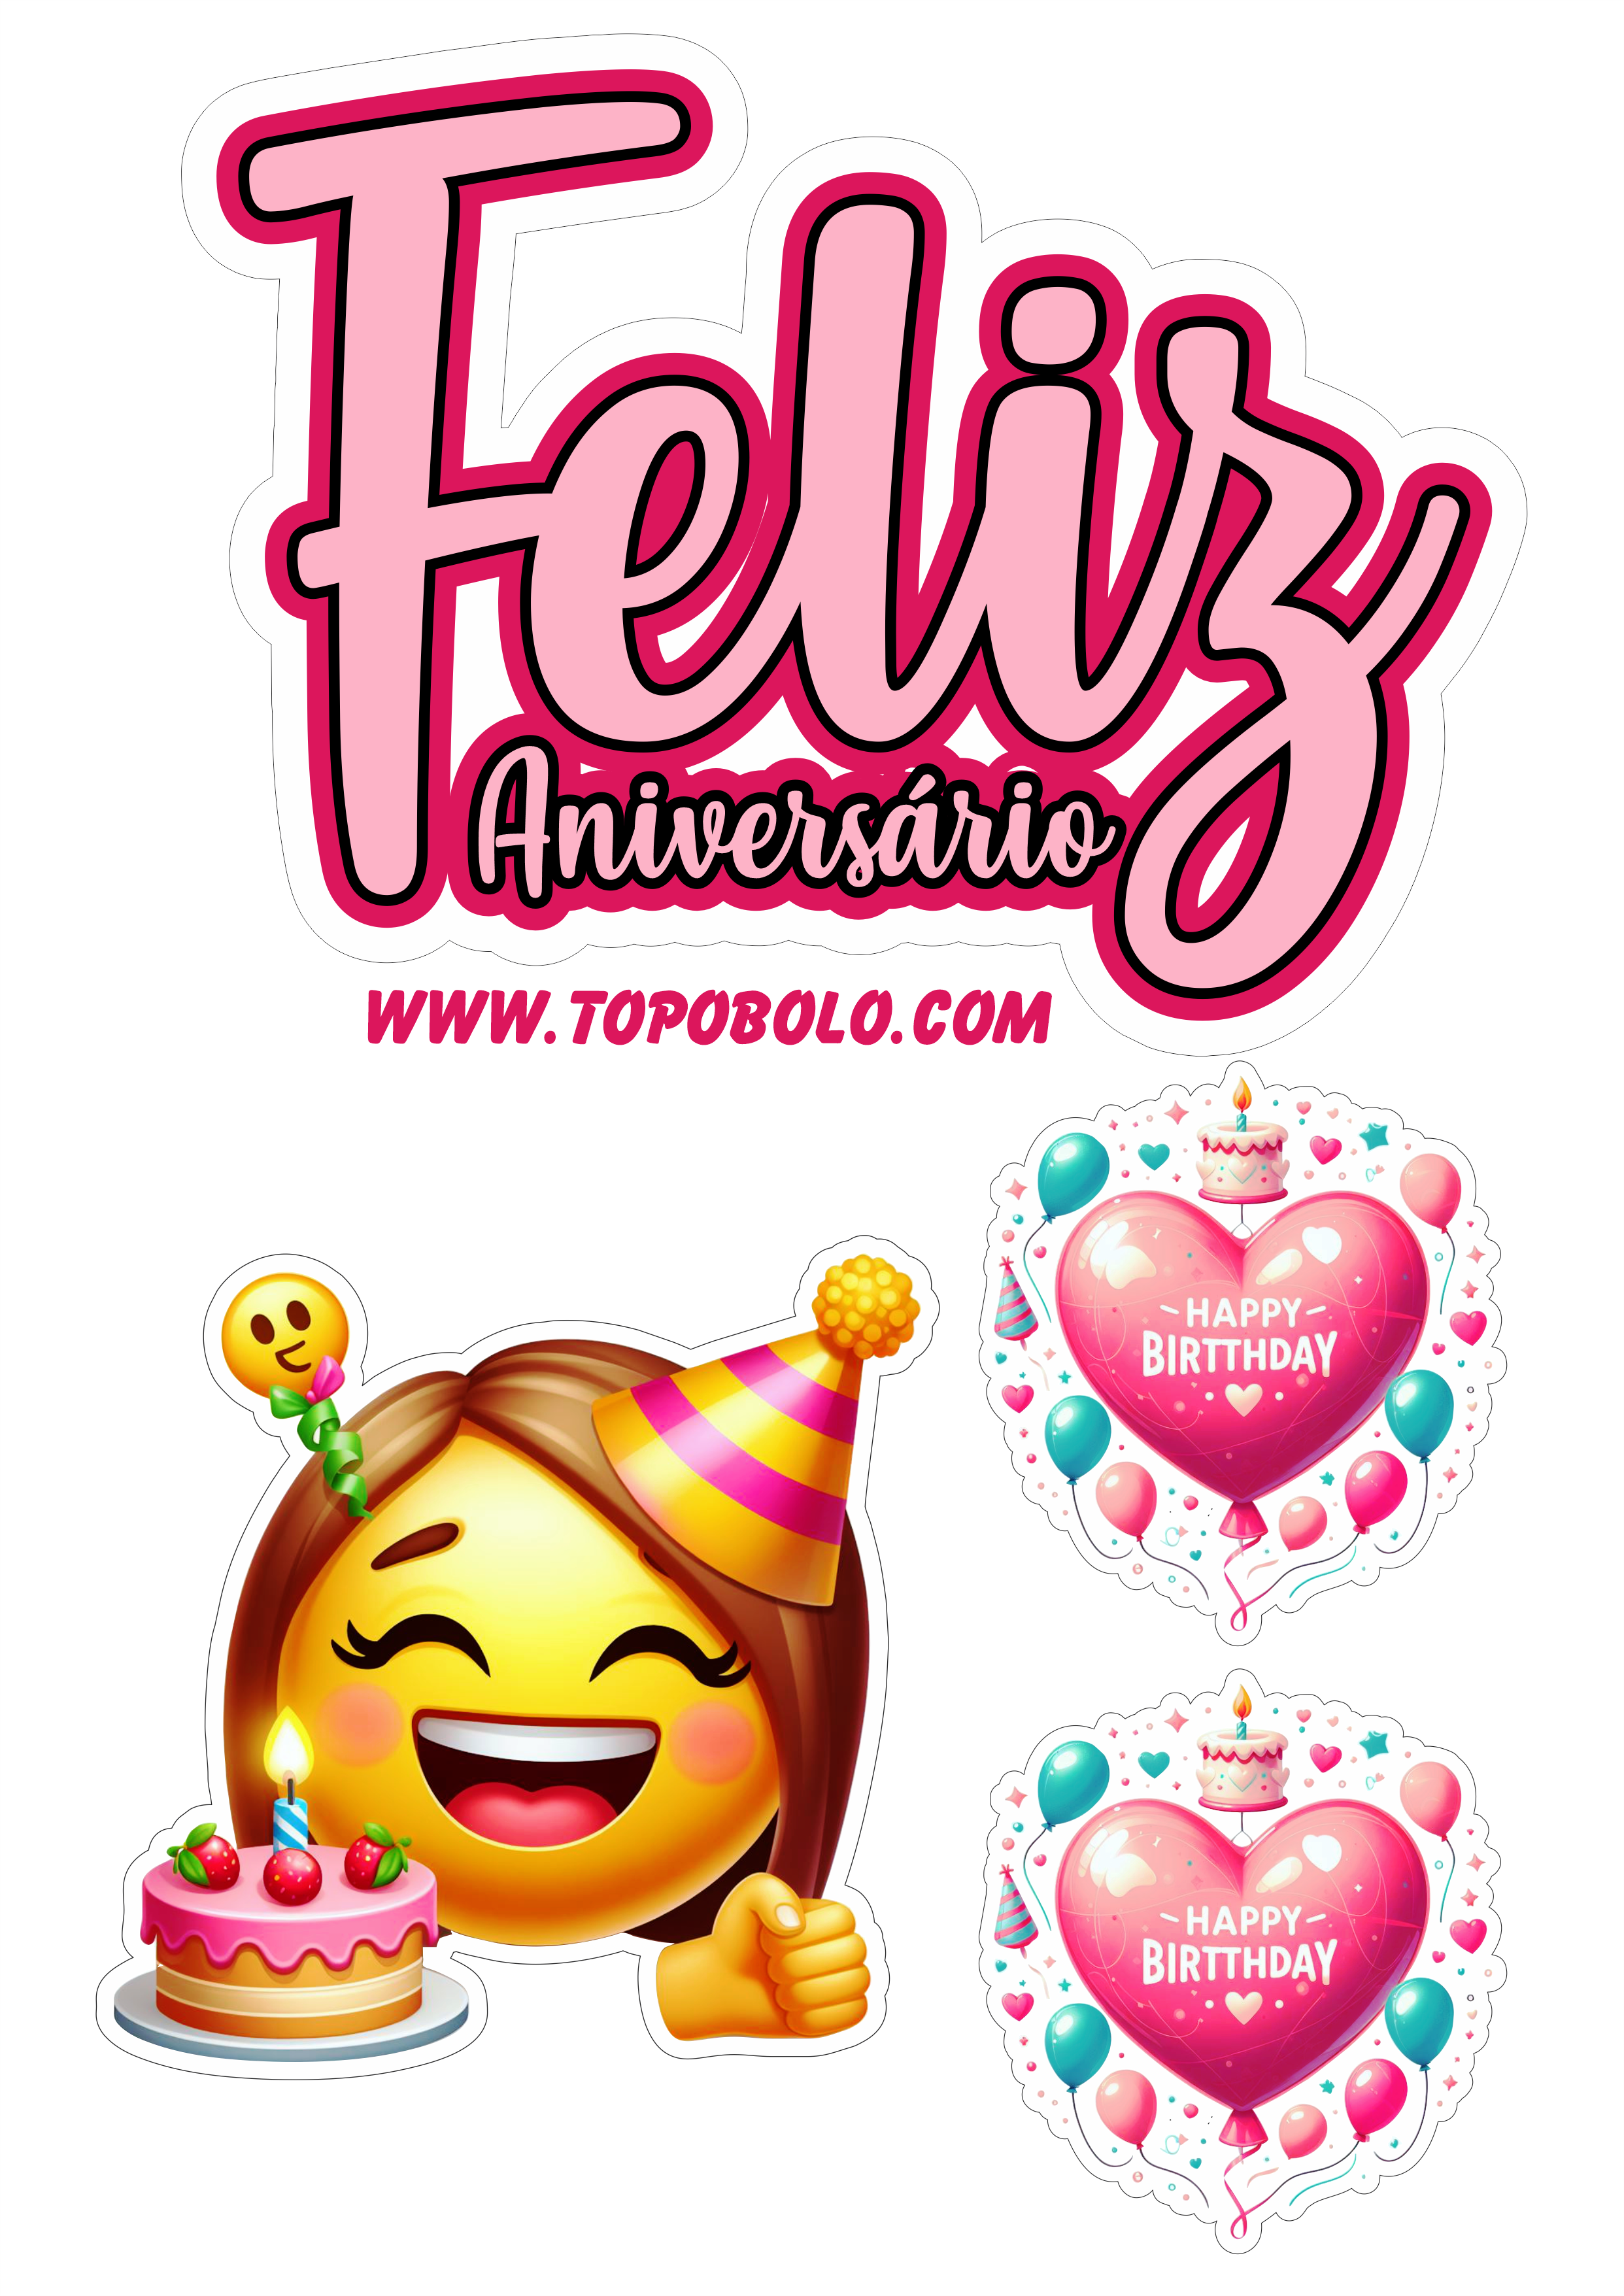 Topo de bolo feliz aniversário emojis engraçados festa pronta papelaria emoticon smiley grátis para imprimir e decorar png